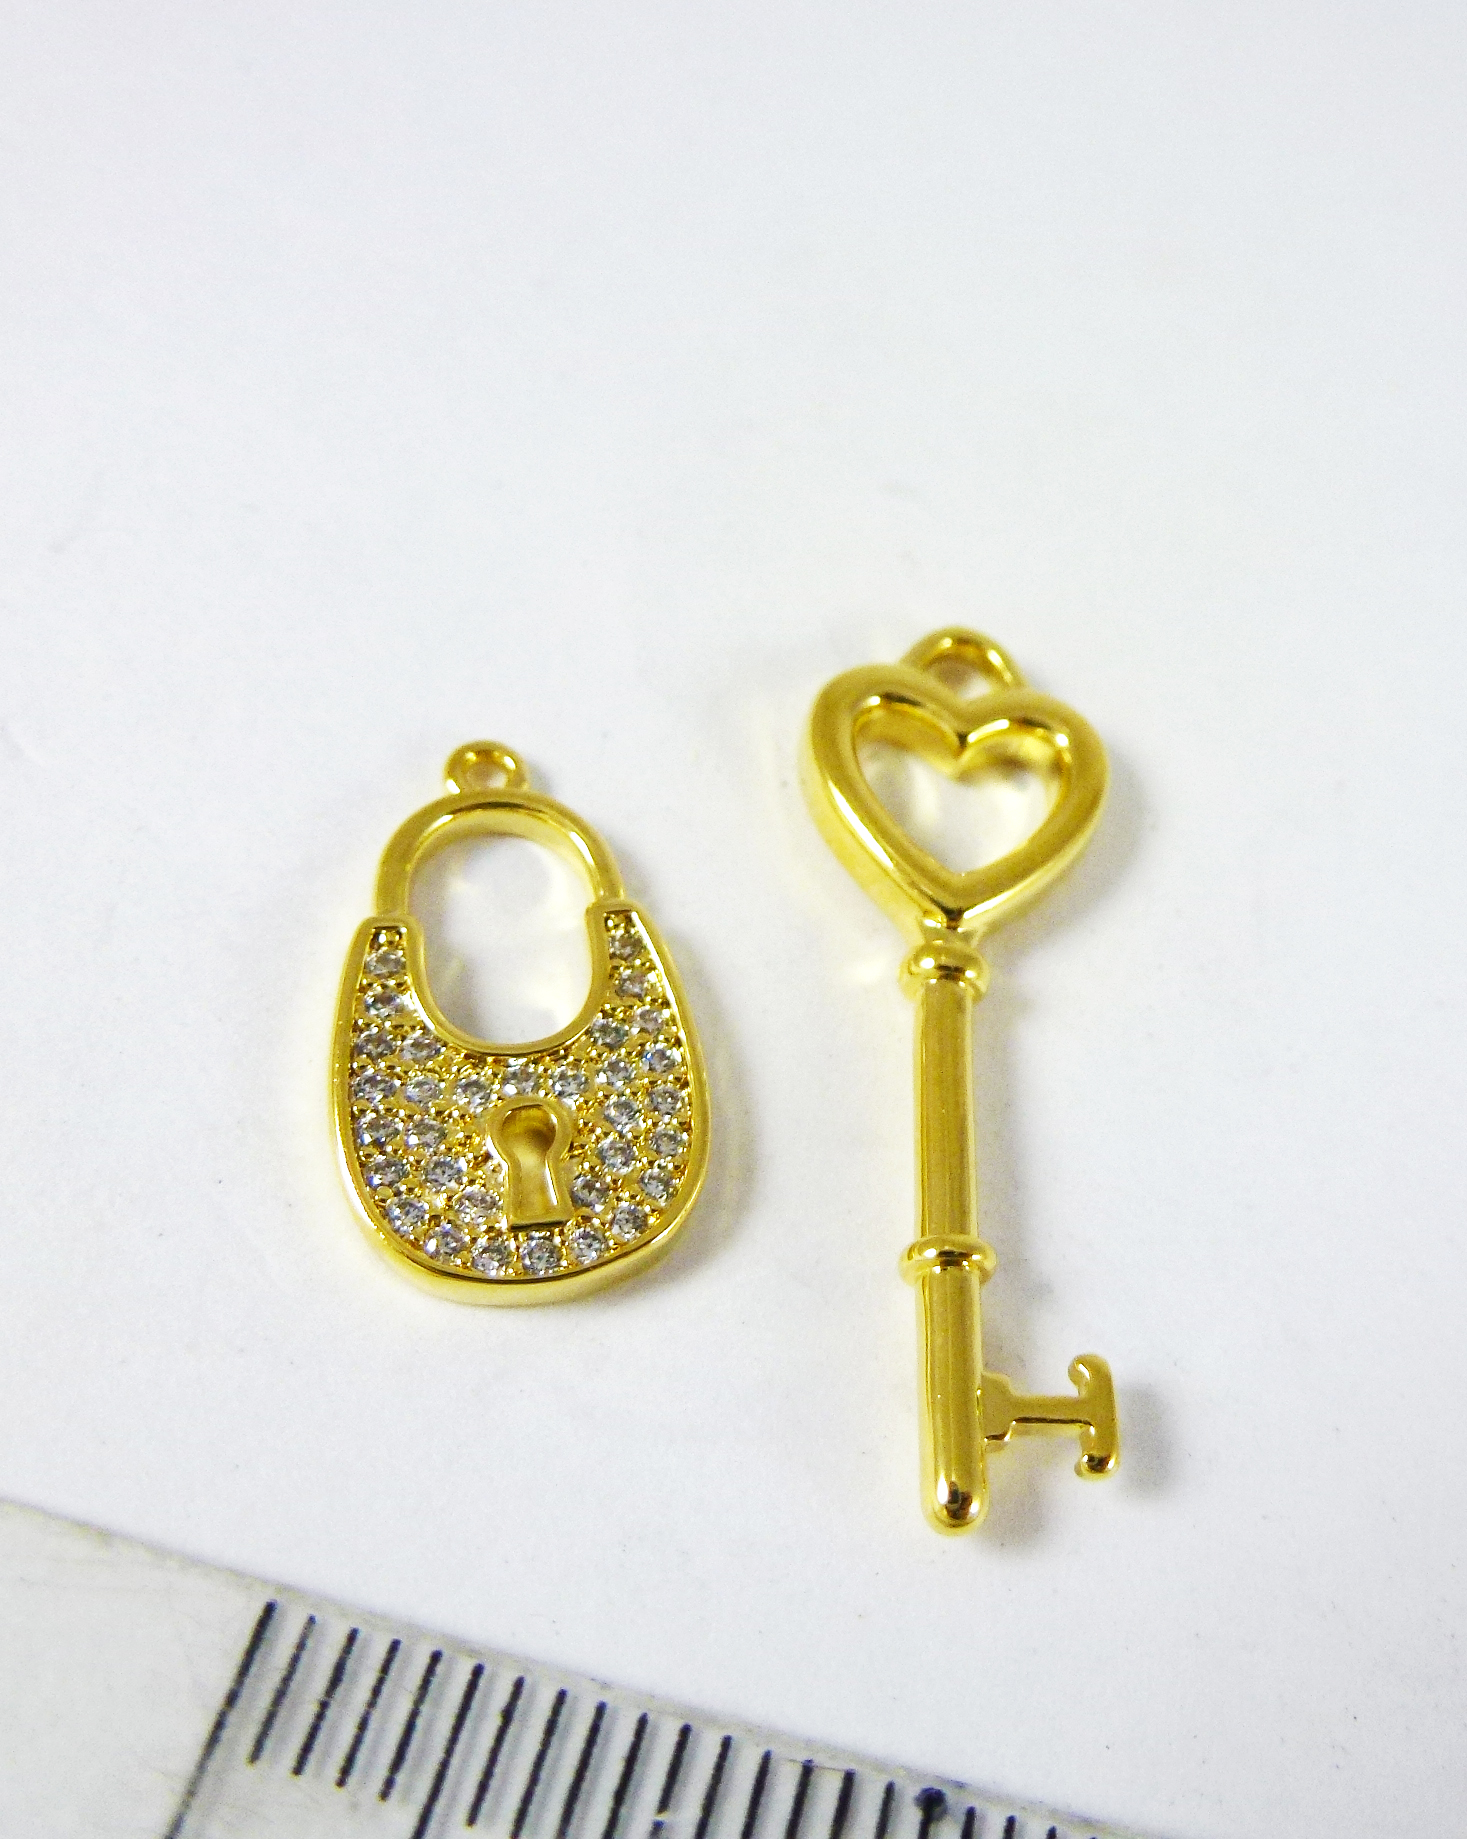 銅鍍金色單孔愛心鑰匙+鑲鑽鎖頭